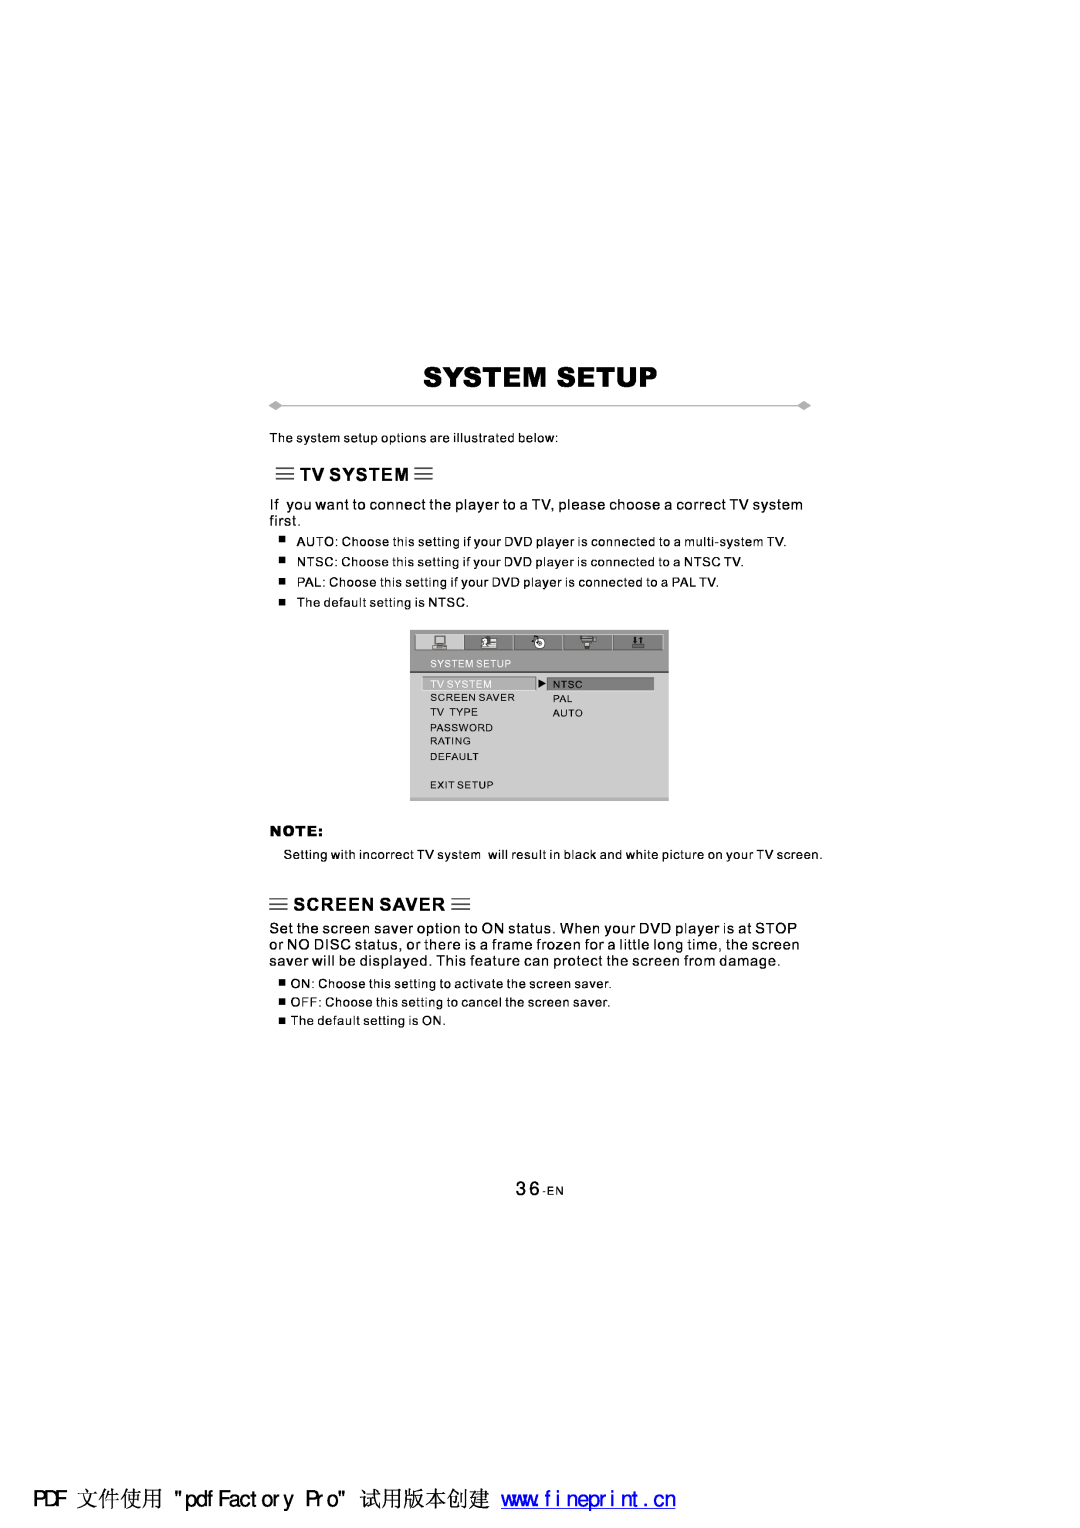 NextBase SDV97-AC manual 36-EN 